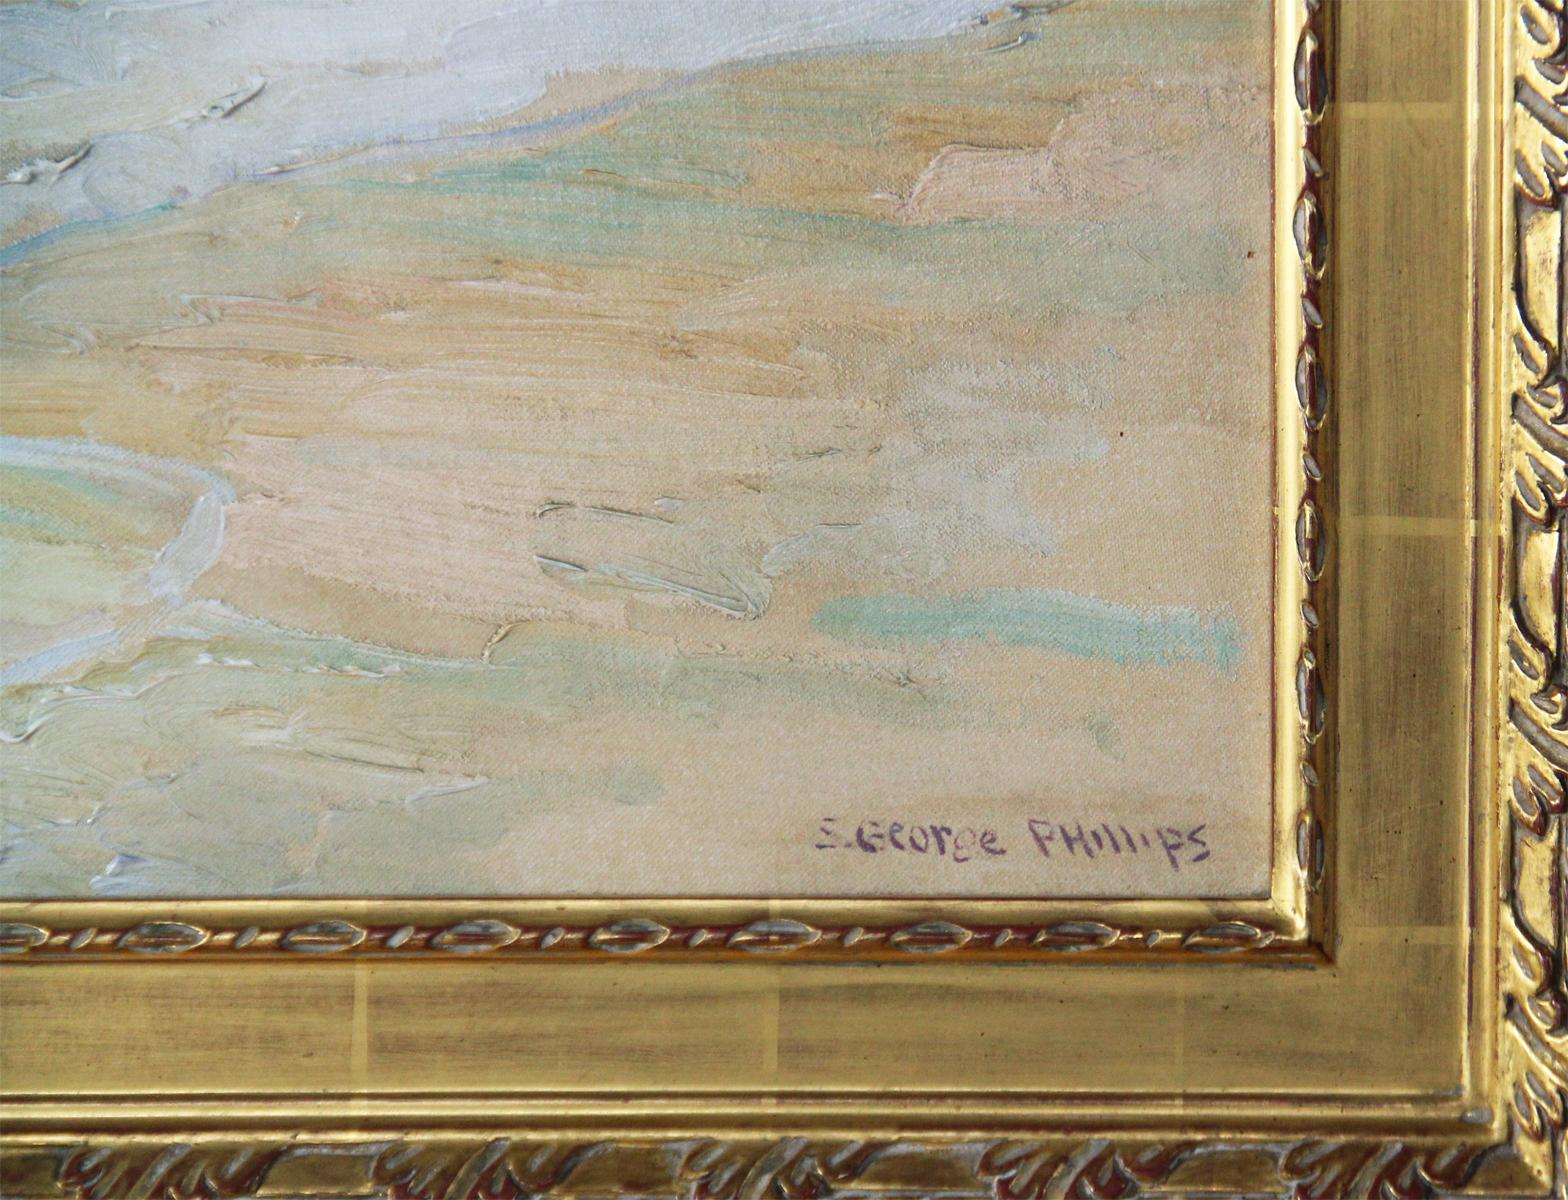 S George Phillips, Research Center Maine, 1930's, Oil on Board (Amerikanischer Impressionismus), Painting, von Samuel George Phillips